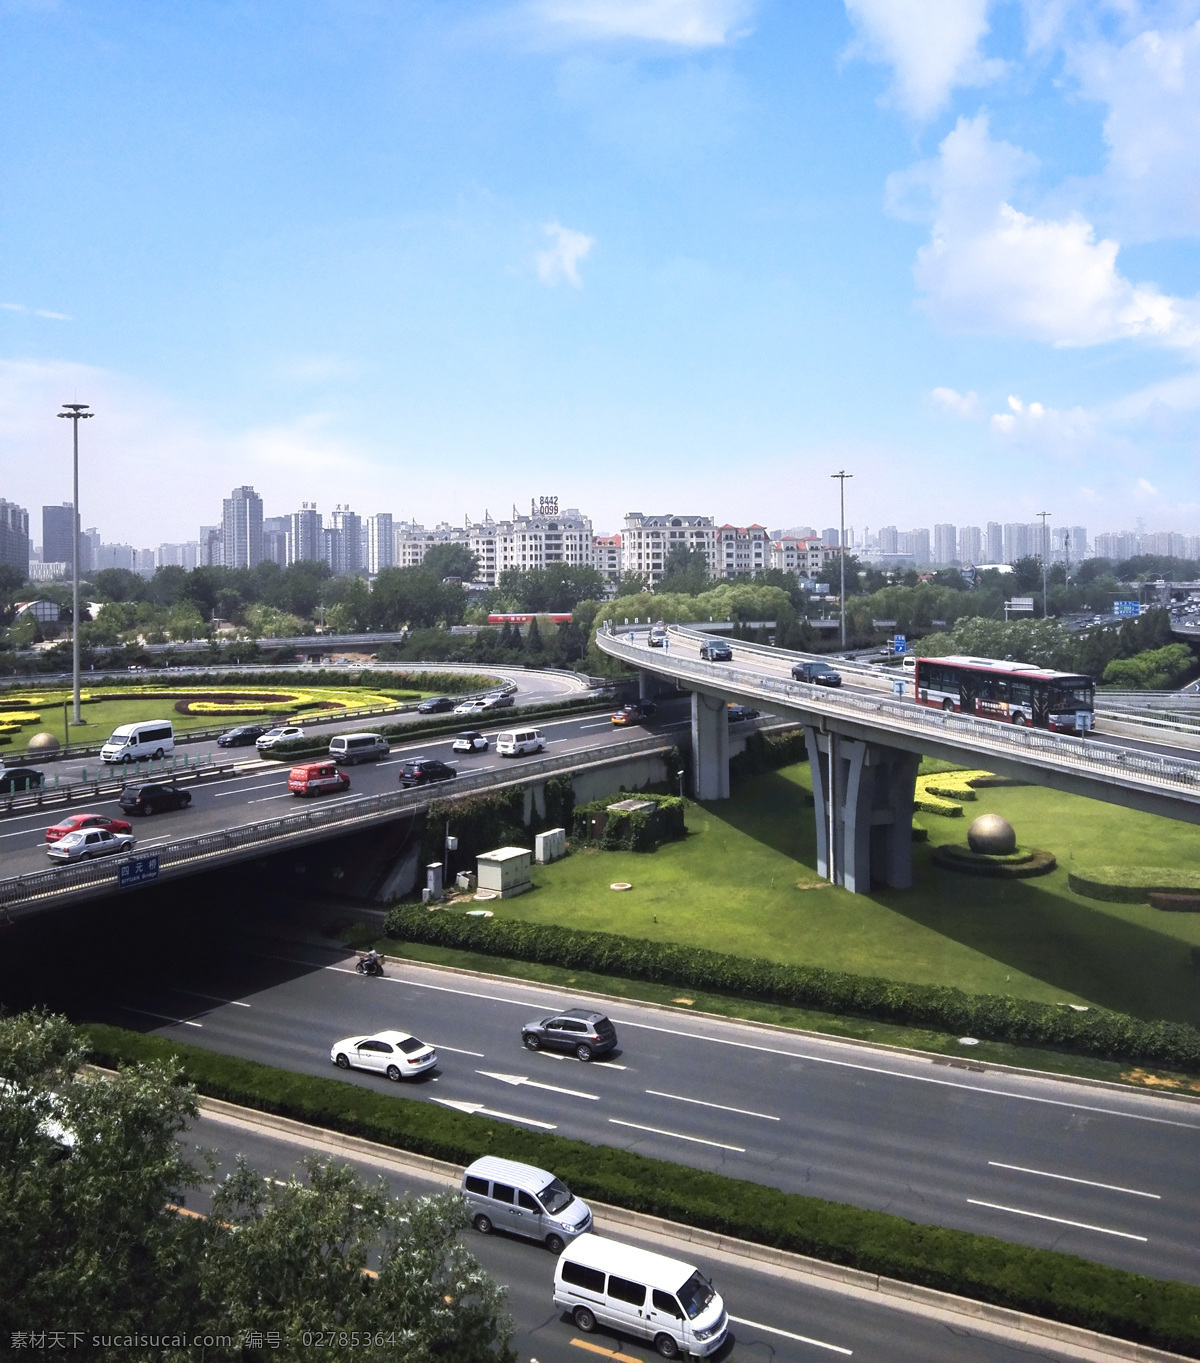 立交桥公路 北京交通 立交桥 行驶 公路 城市 发展 现代科技 交通工具